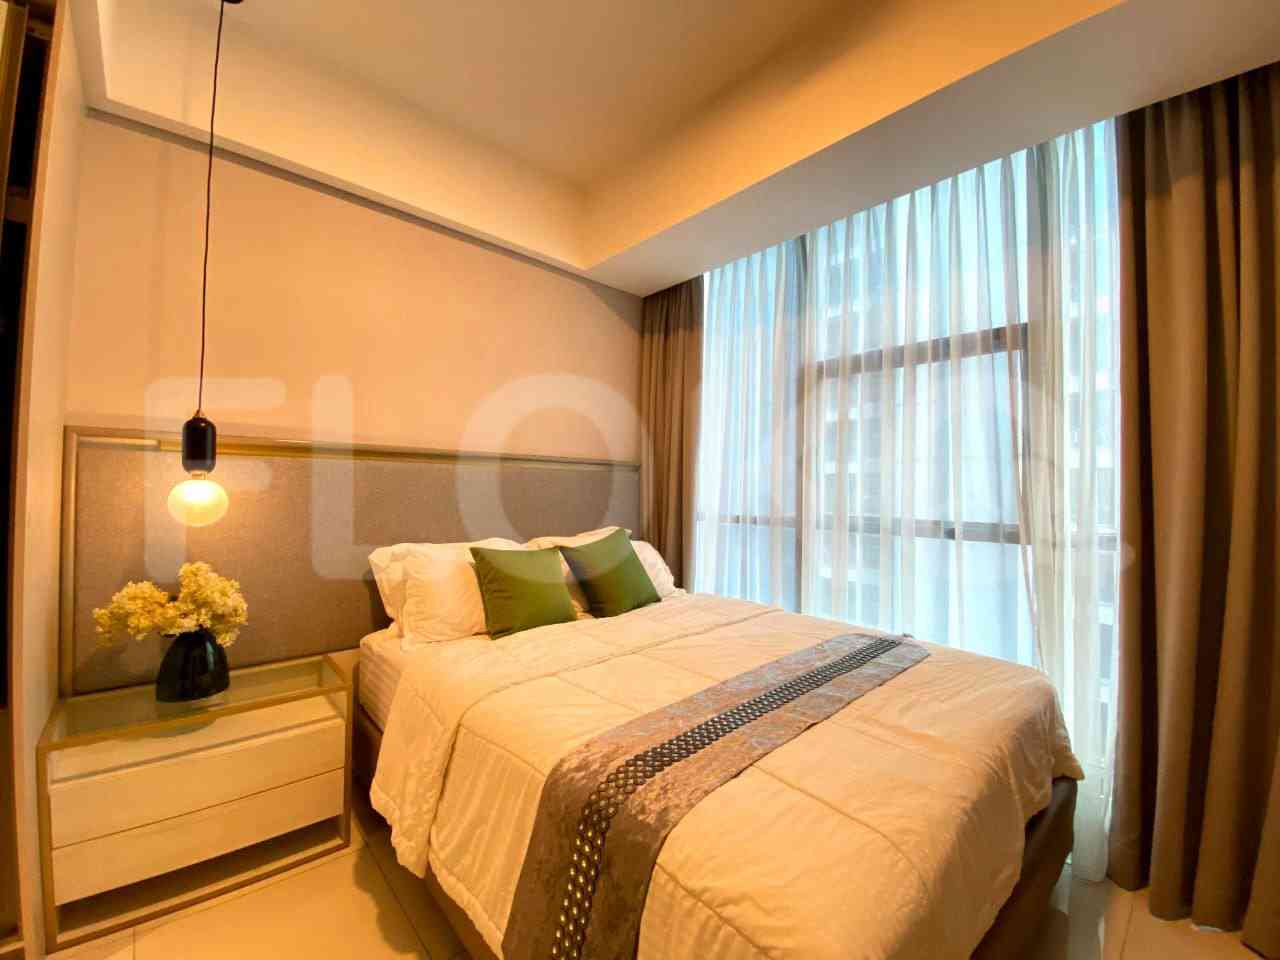 3 Bedroom on 20th Floor for Rent in Casa Grande - fte785 2